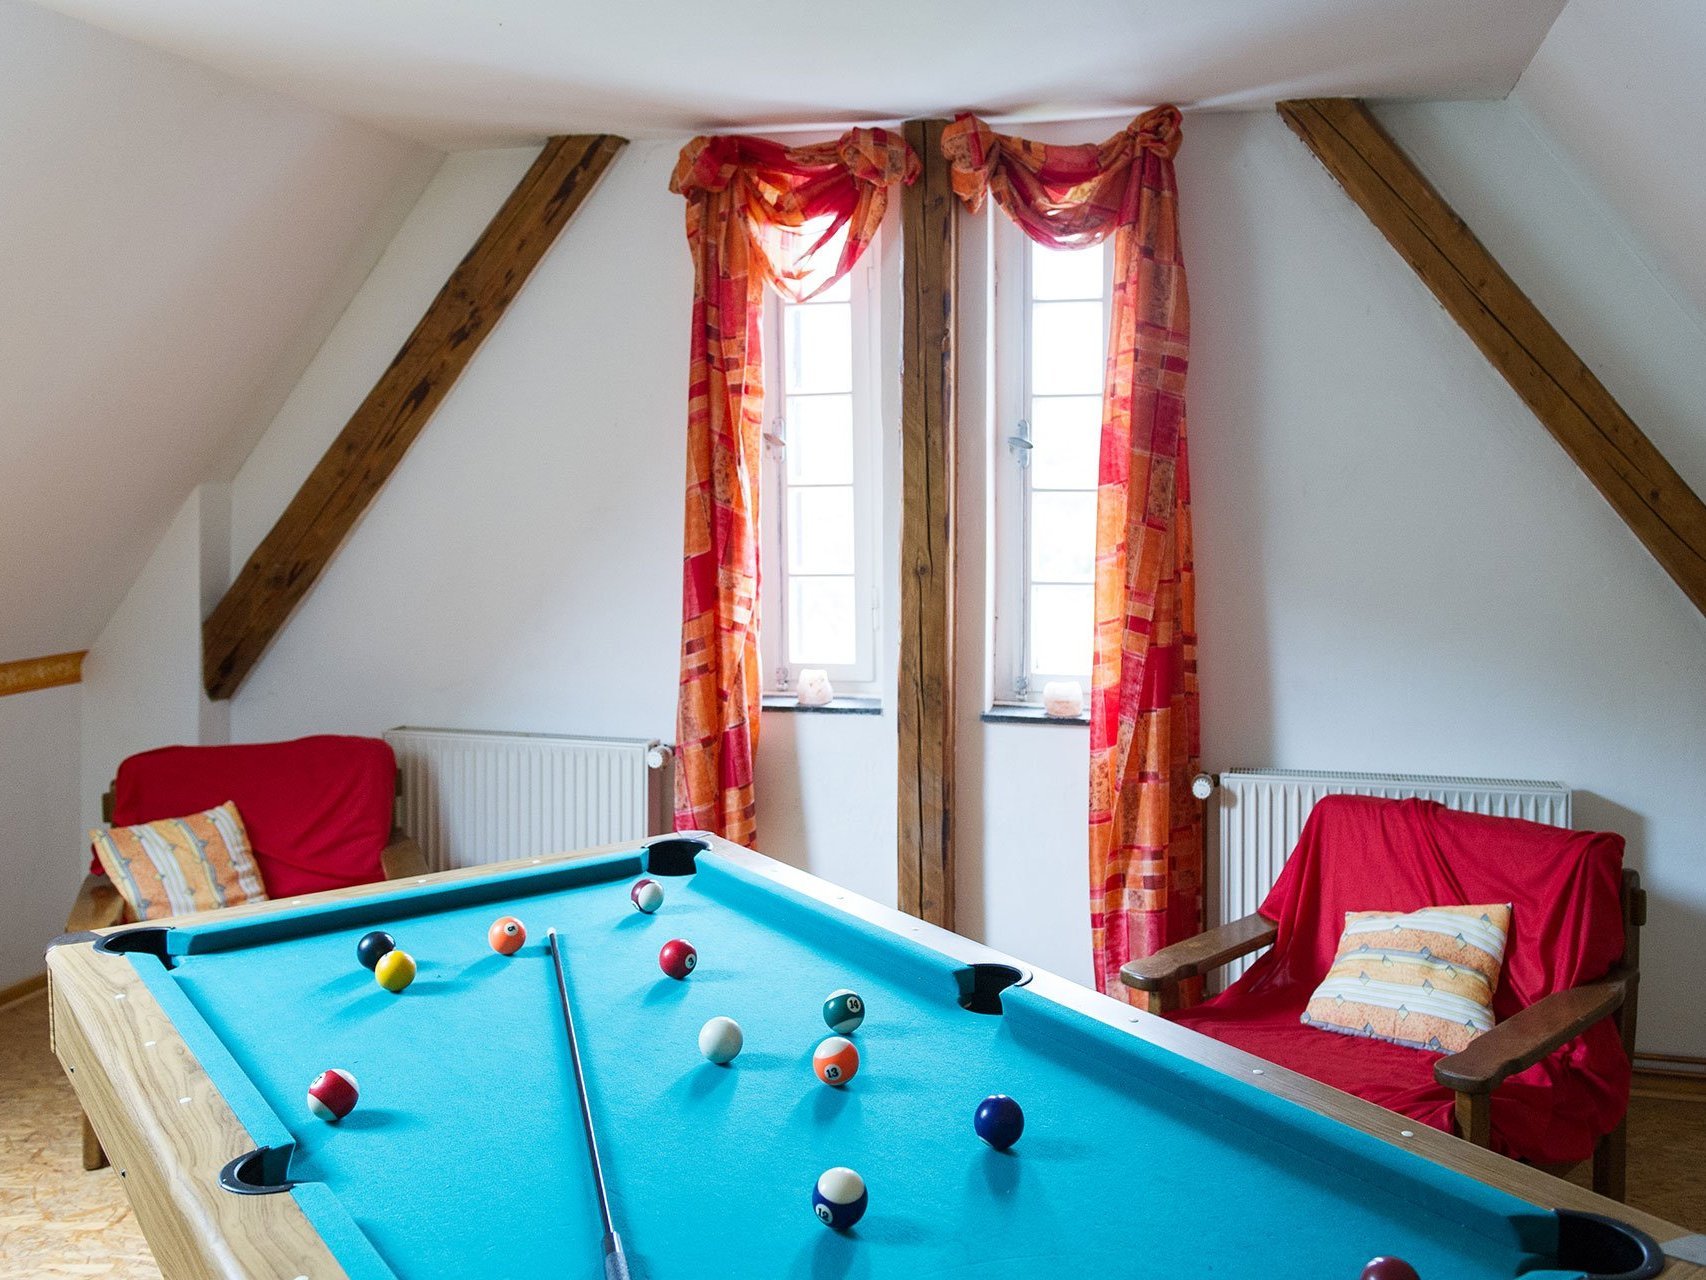 Nahaufnahme: Billiardtisch in einem gemütlichen Zimmer mit Dachschräge